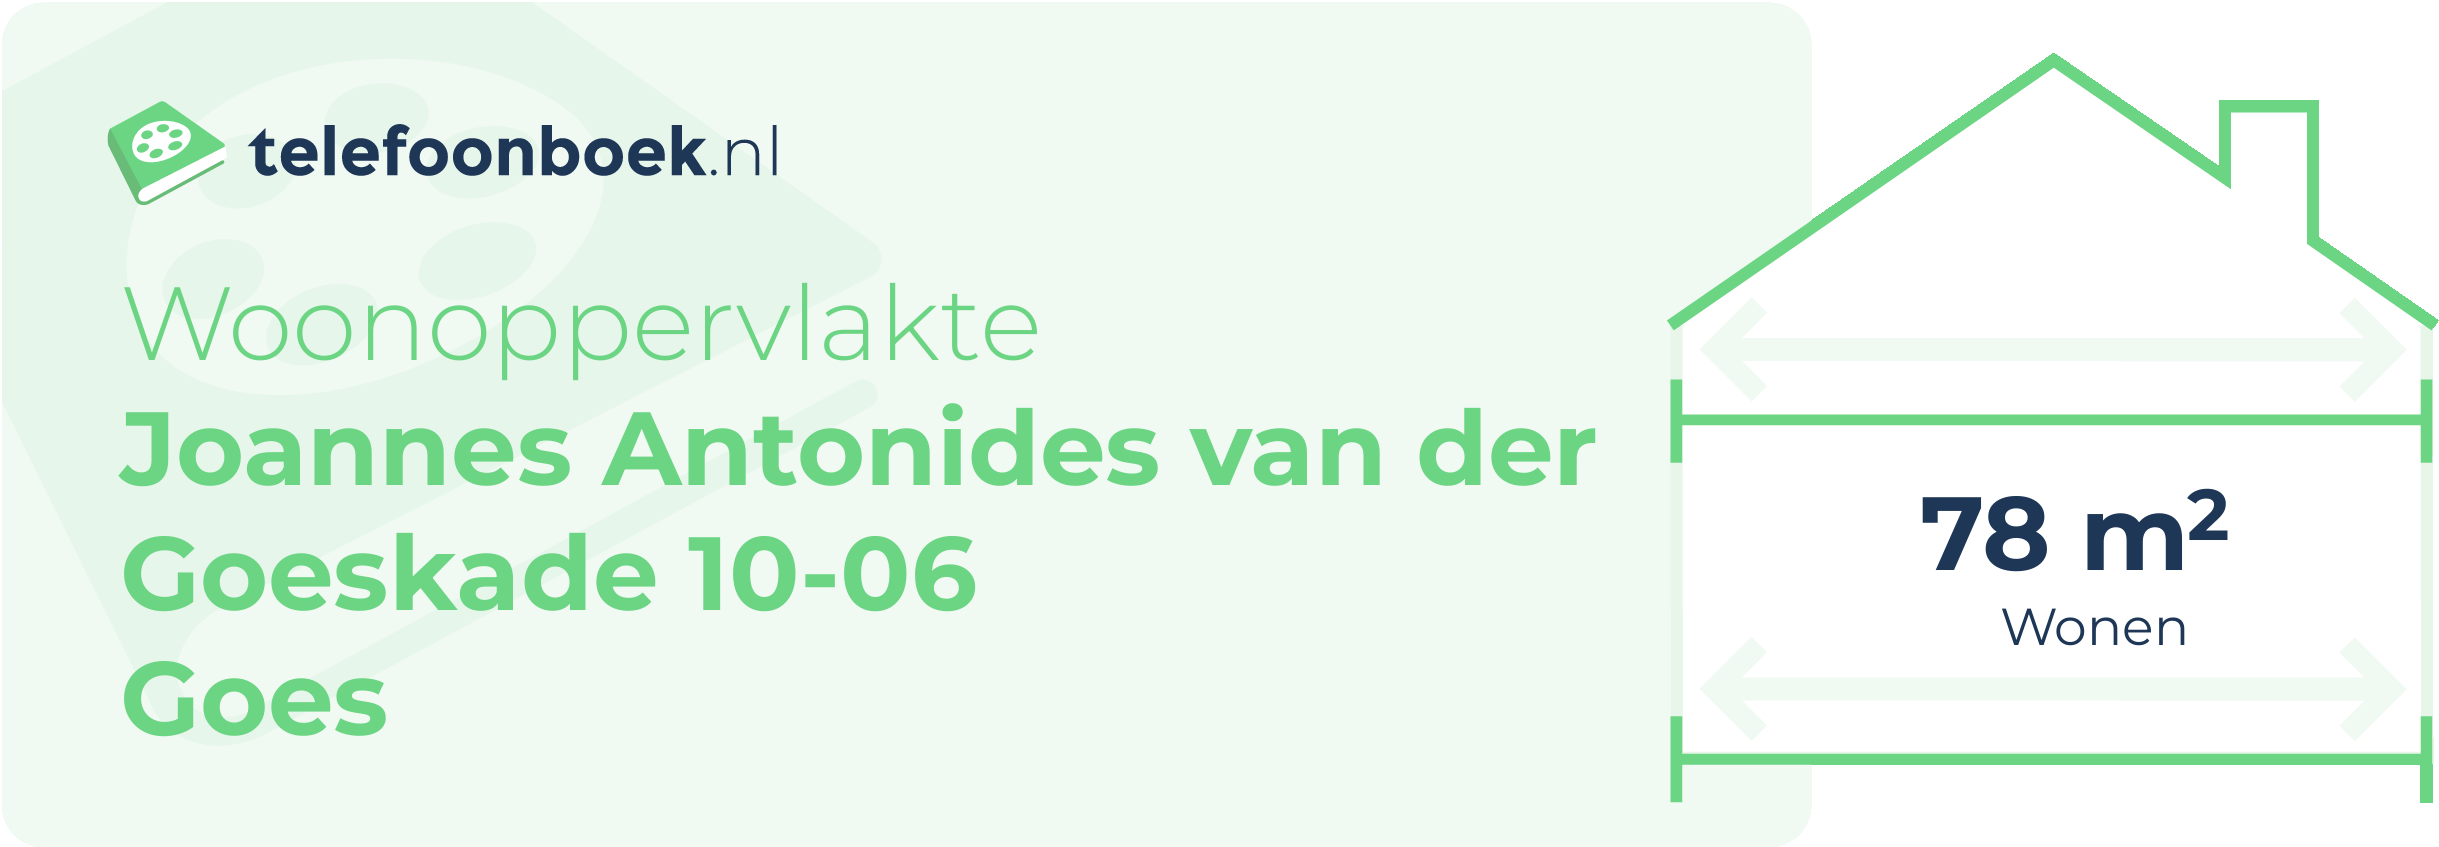 Woonoppervlakte Joannes Antonides Van Der Goeskade 10-06 Goes